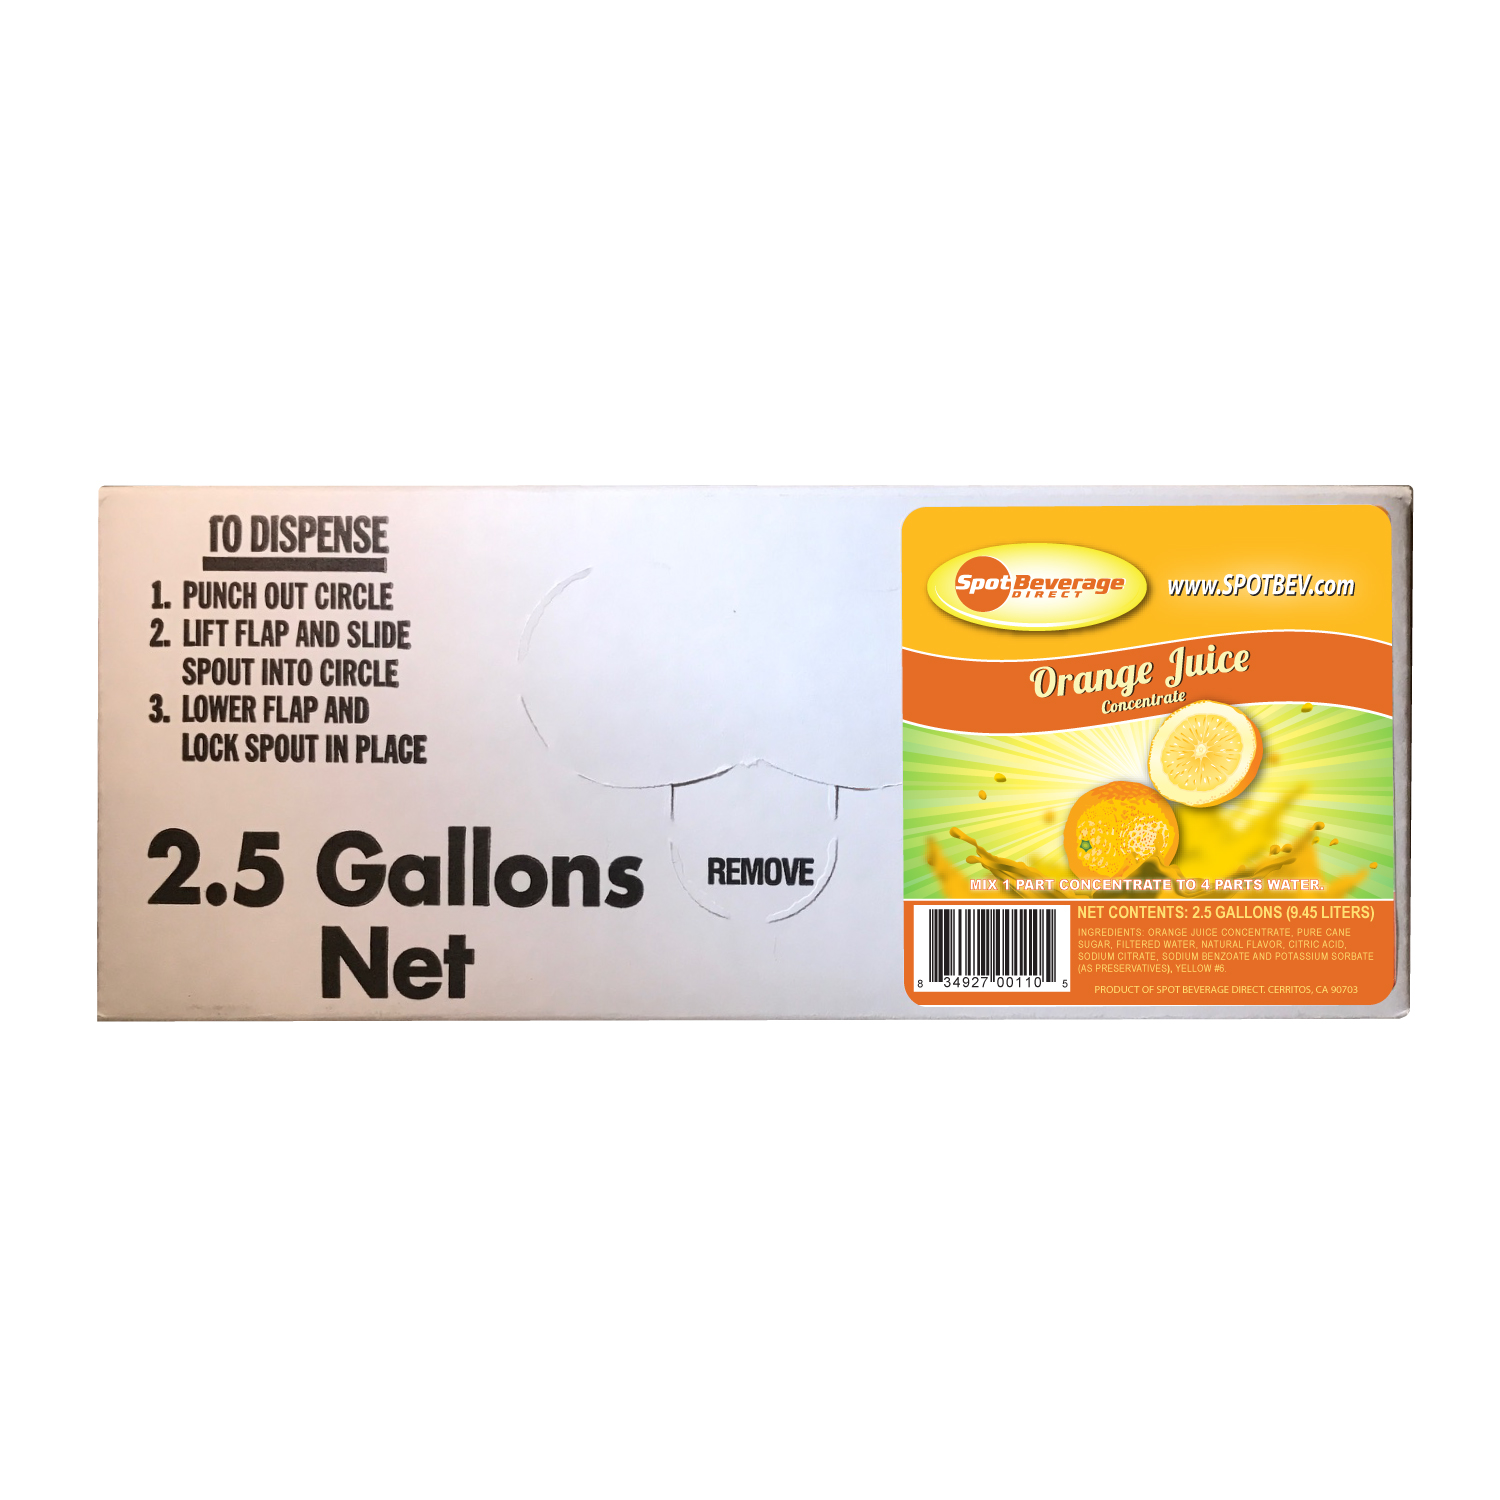 Spot Premium Orange Juice 2.5 gal. Bag-n-Box (1 to 4 Concentrate)